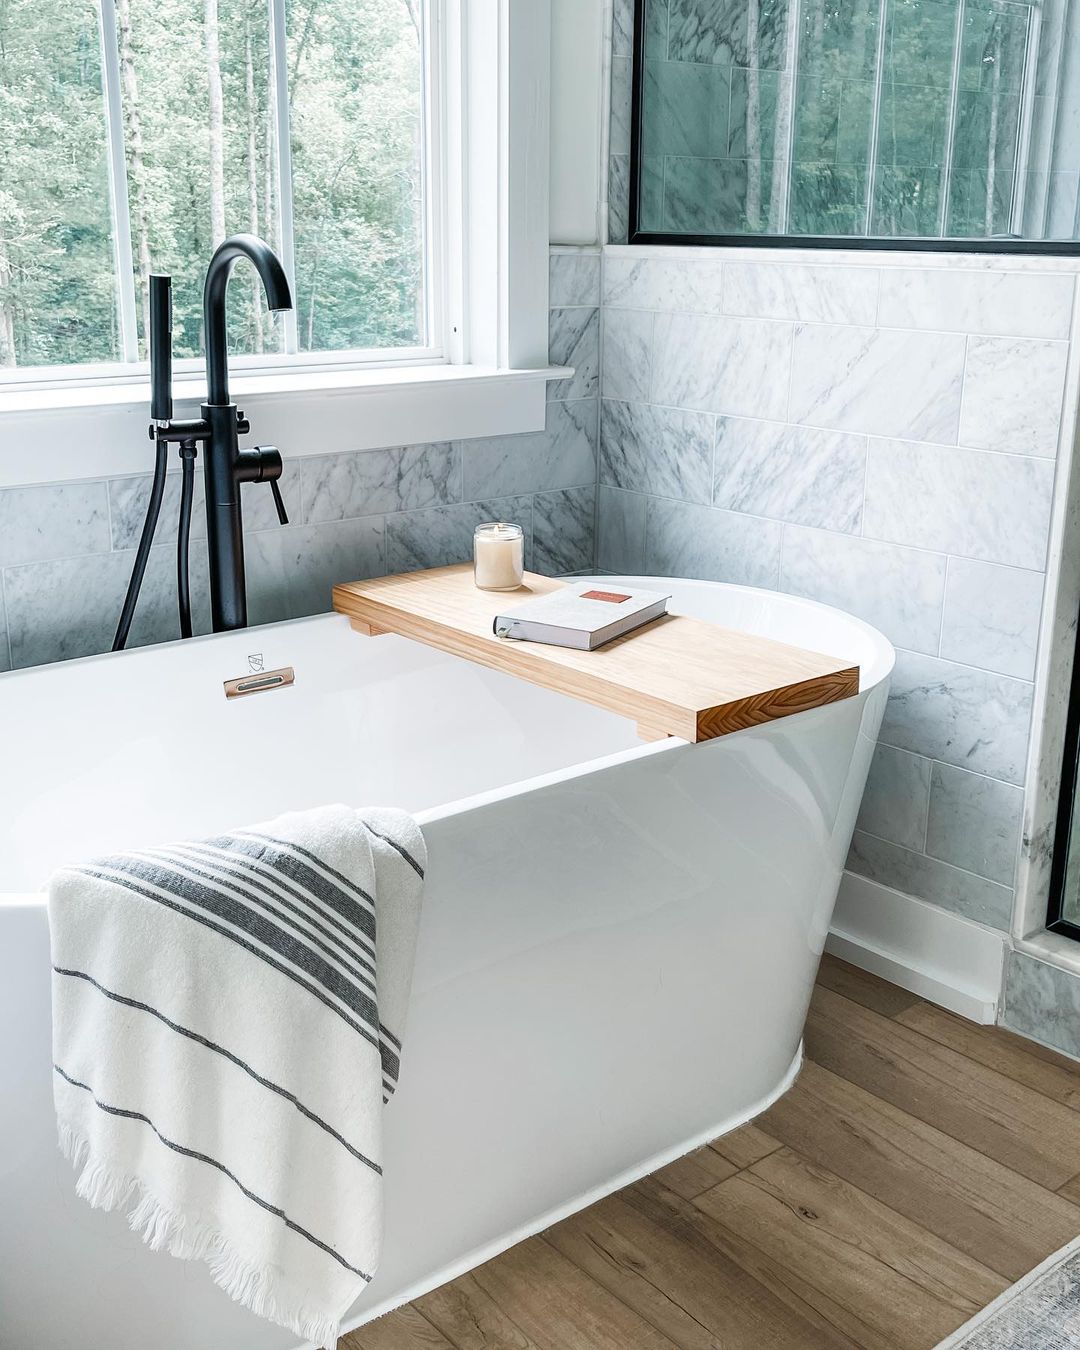 Enjoy a Cozy Bath with a Sleek Wooden Tray